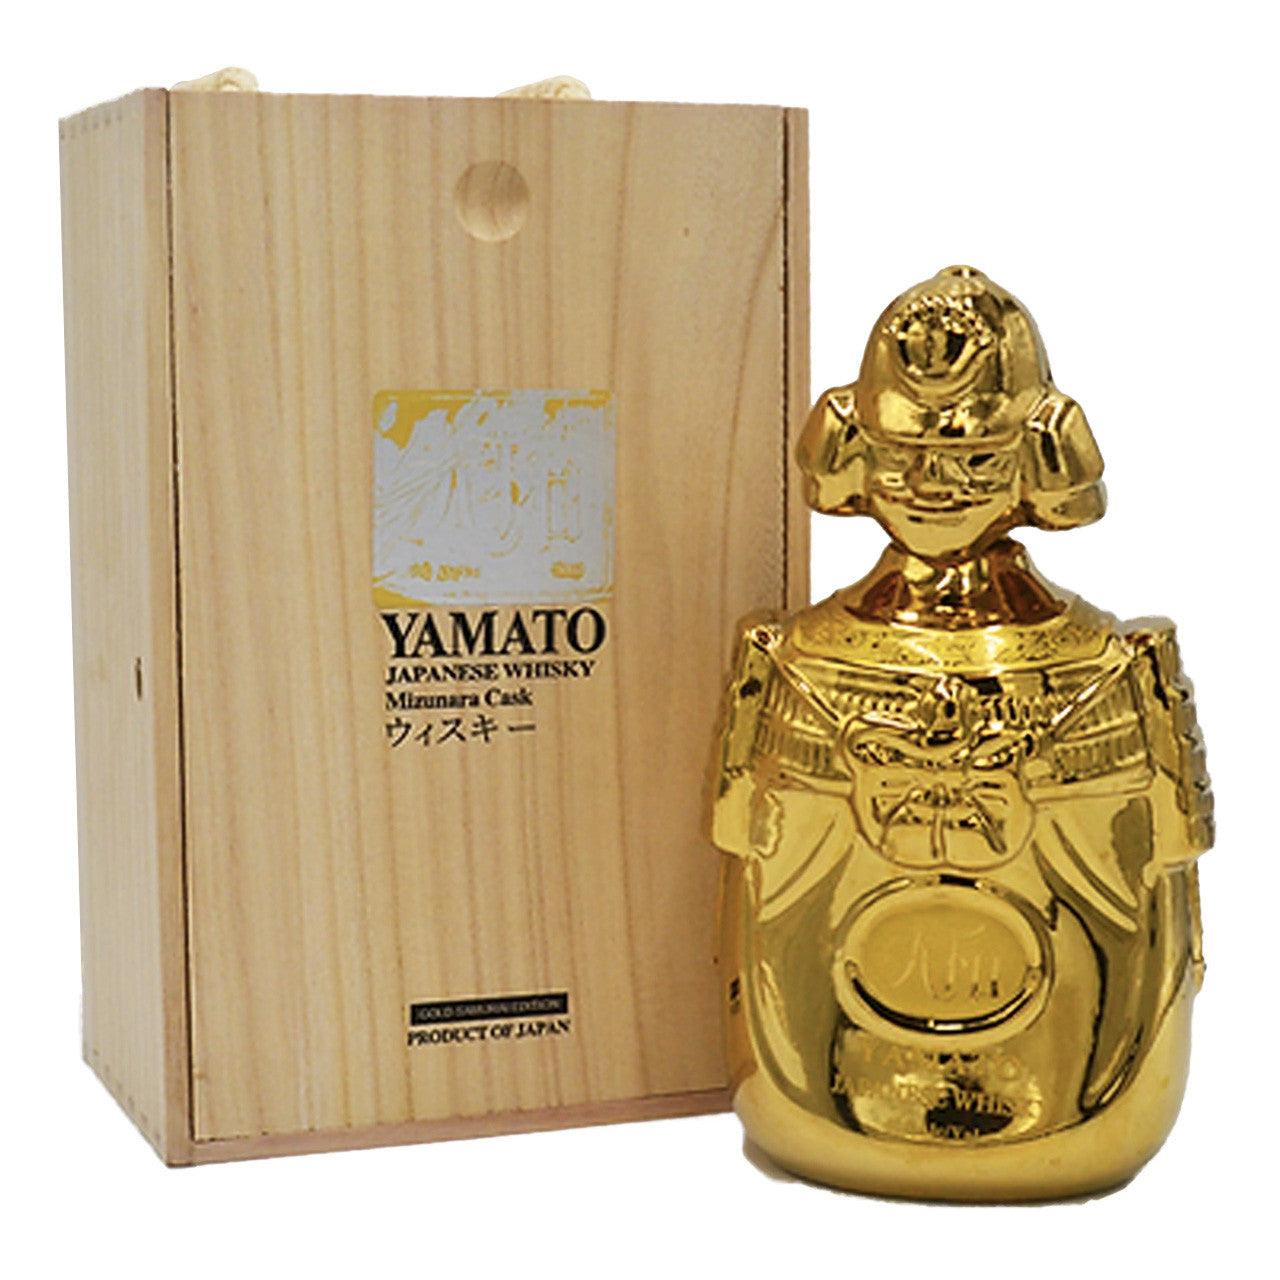 Yamato Gold Samurai Edition Japanese Whisky Mizunara Cask